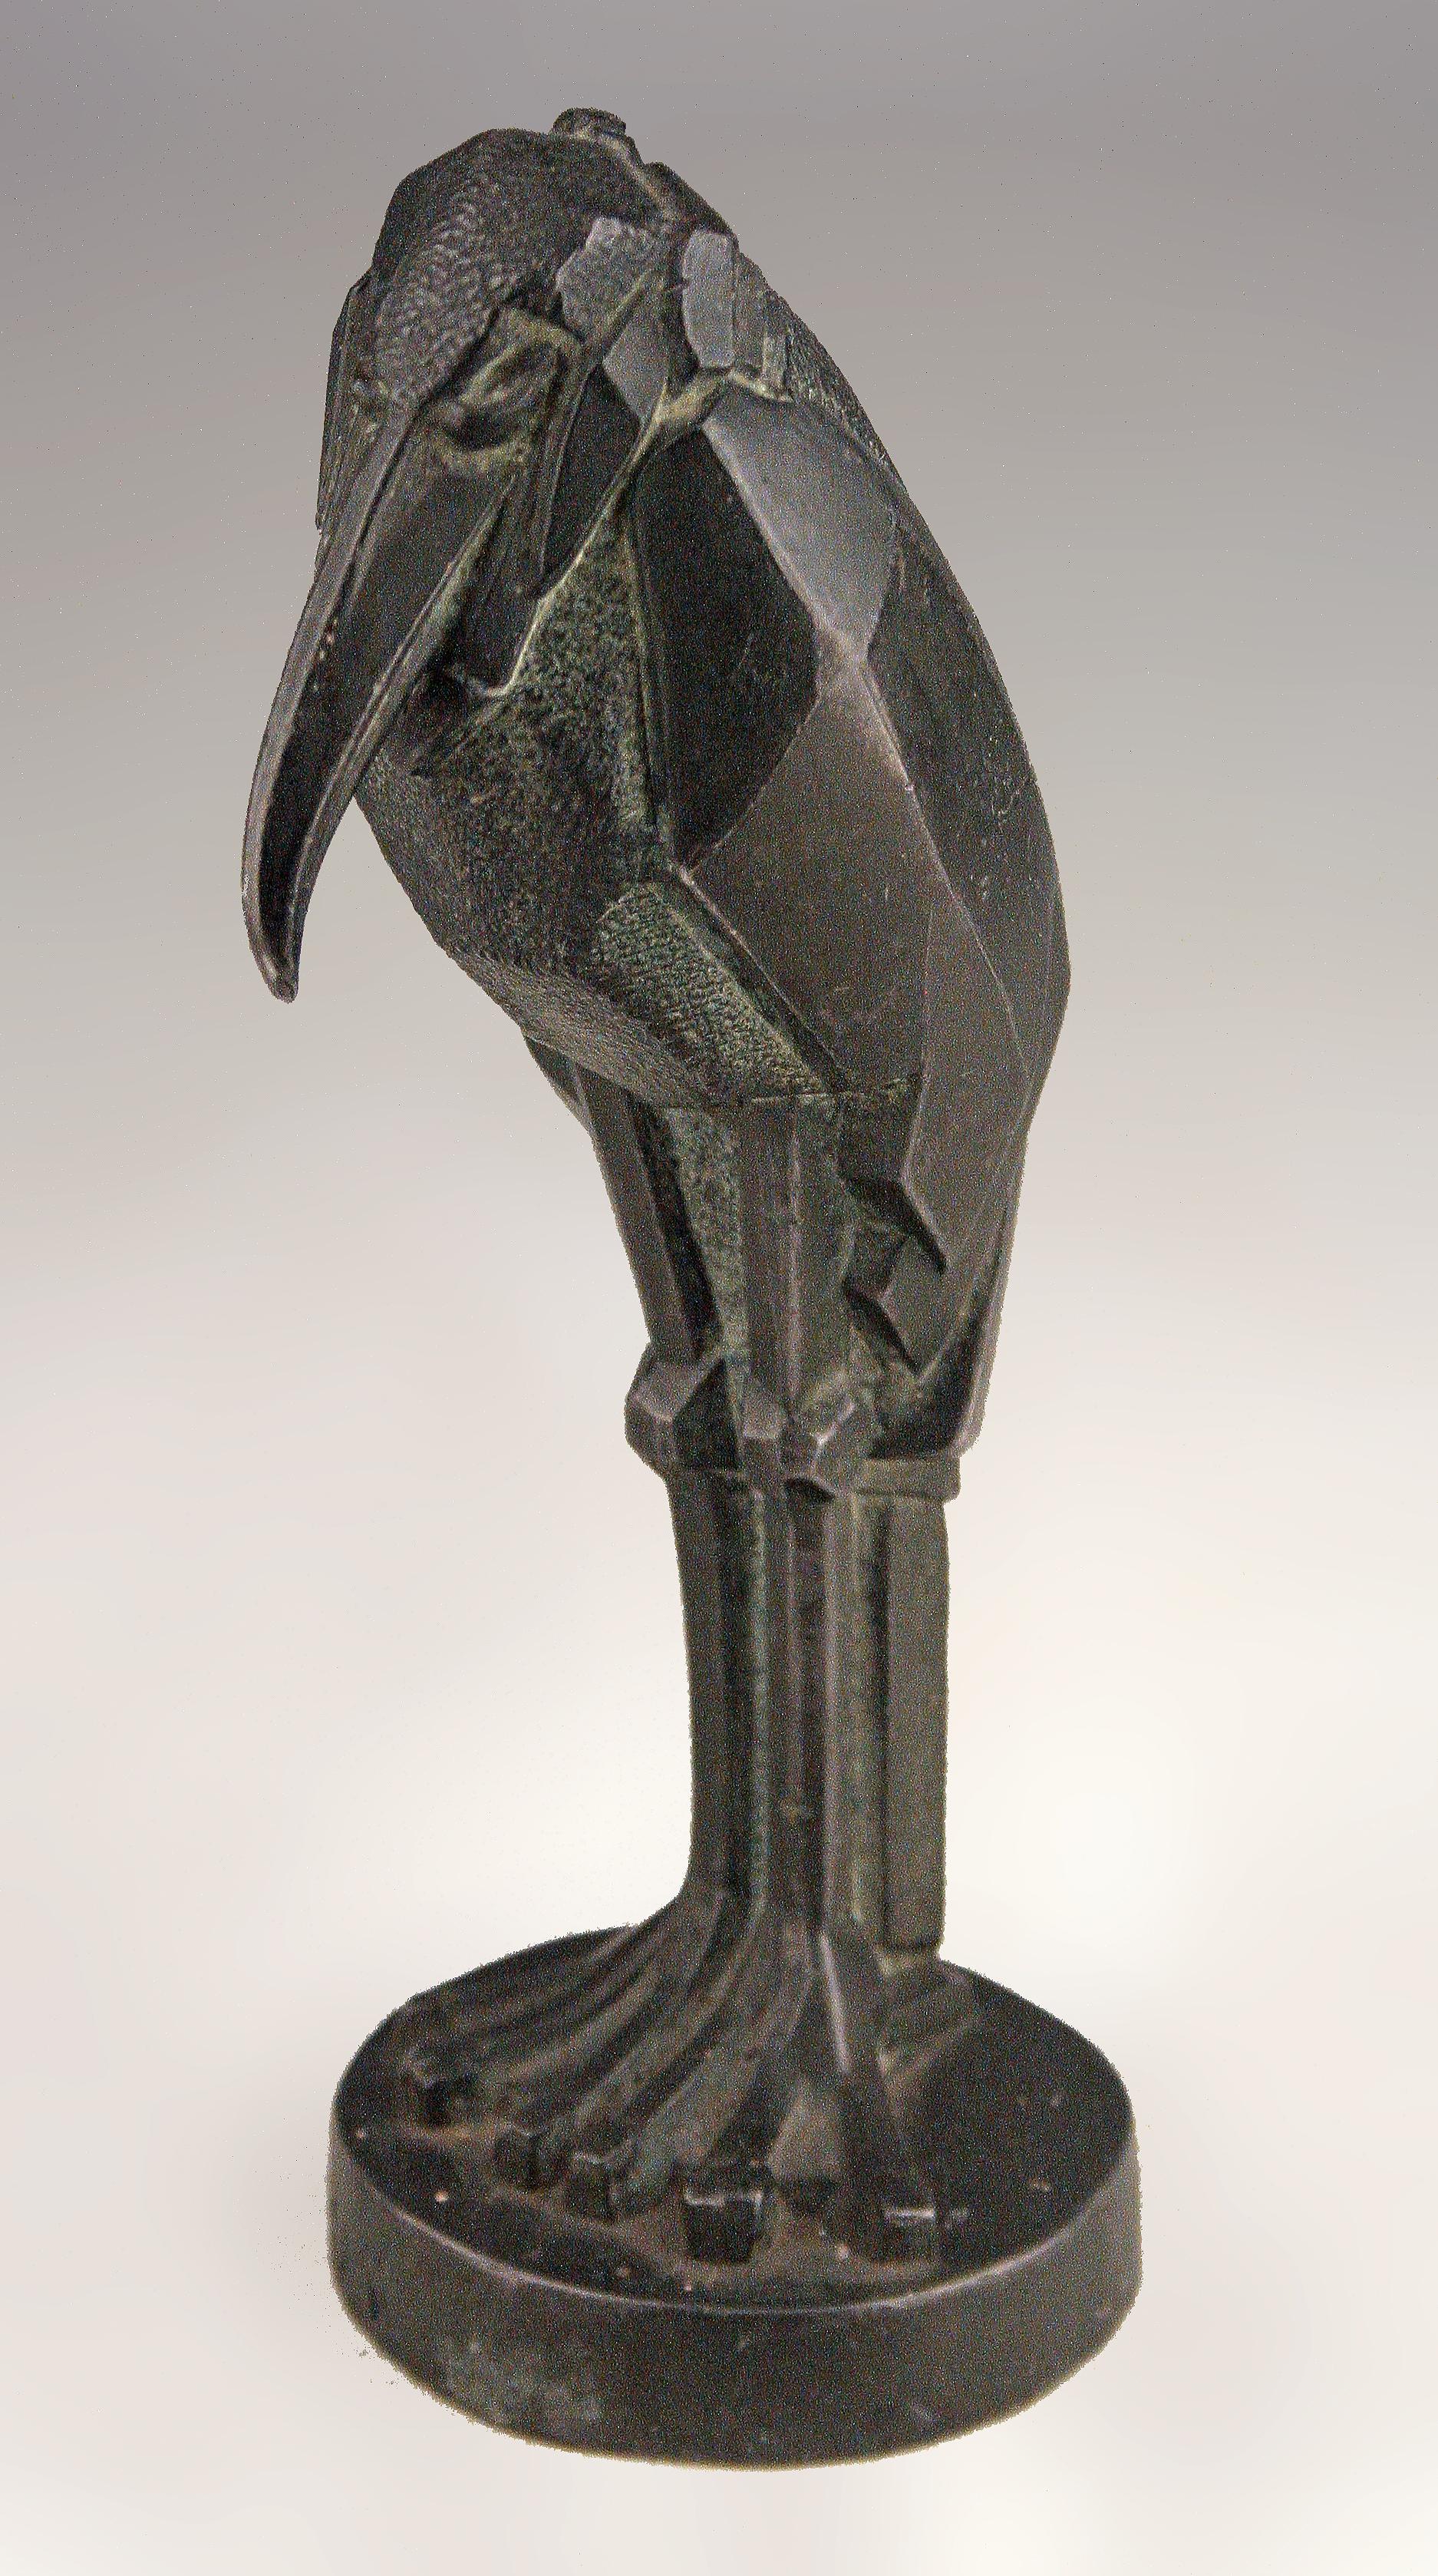 Sculpture Art Déco en bronze patiné représentant une cigogne debout par l'auteur animalier Charles Artus

Par : Charles Artus
MATERIAL : bronze, métal, cuivre
Technique : fonte, patine, moulage, travail du métal
Dimensions : 3,5 in x 2,5 in x 6,5